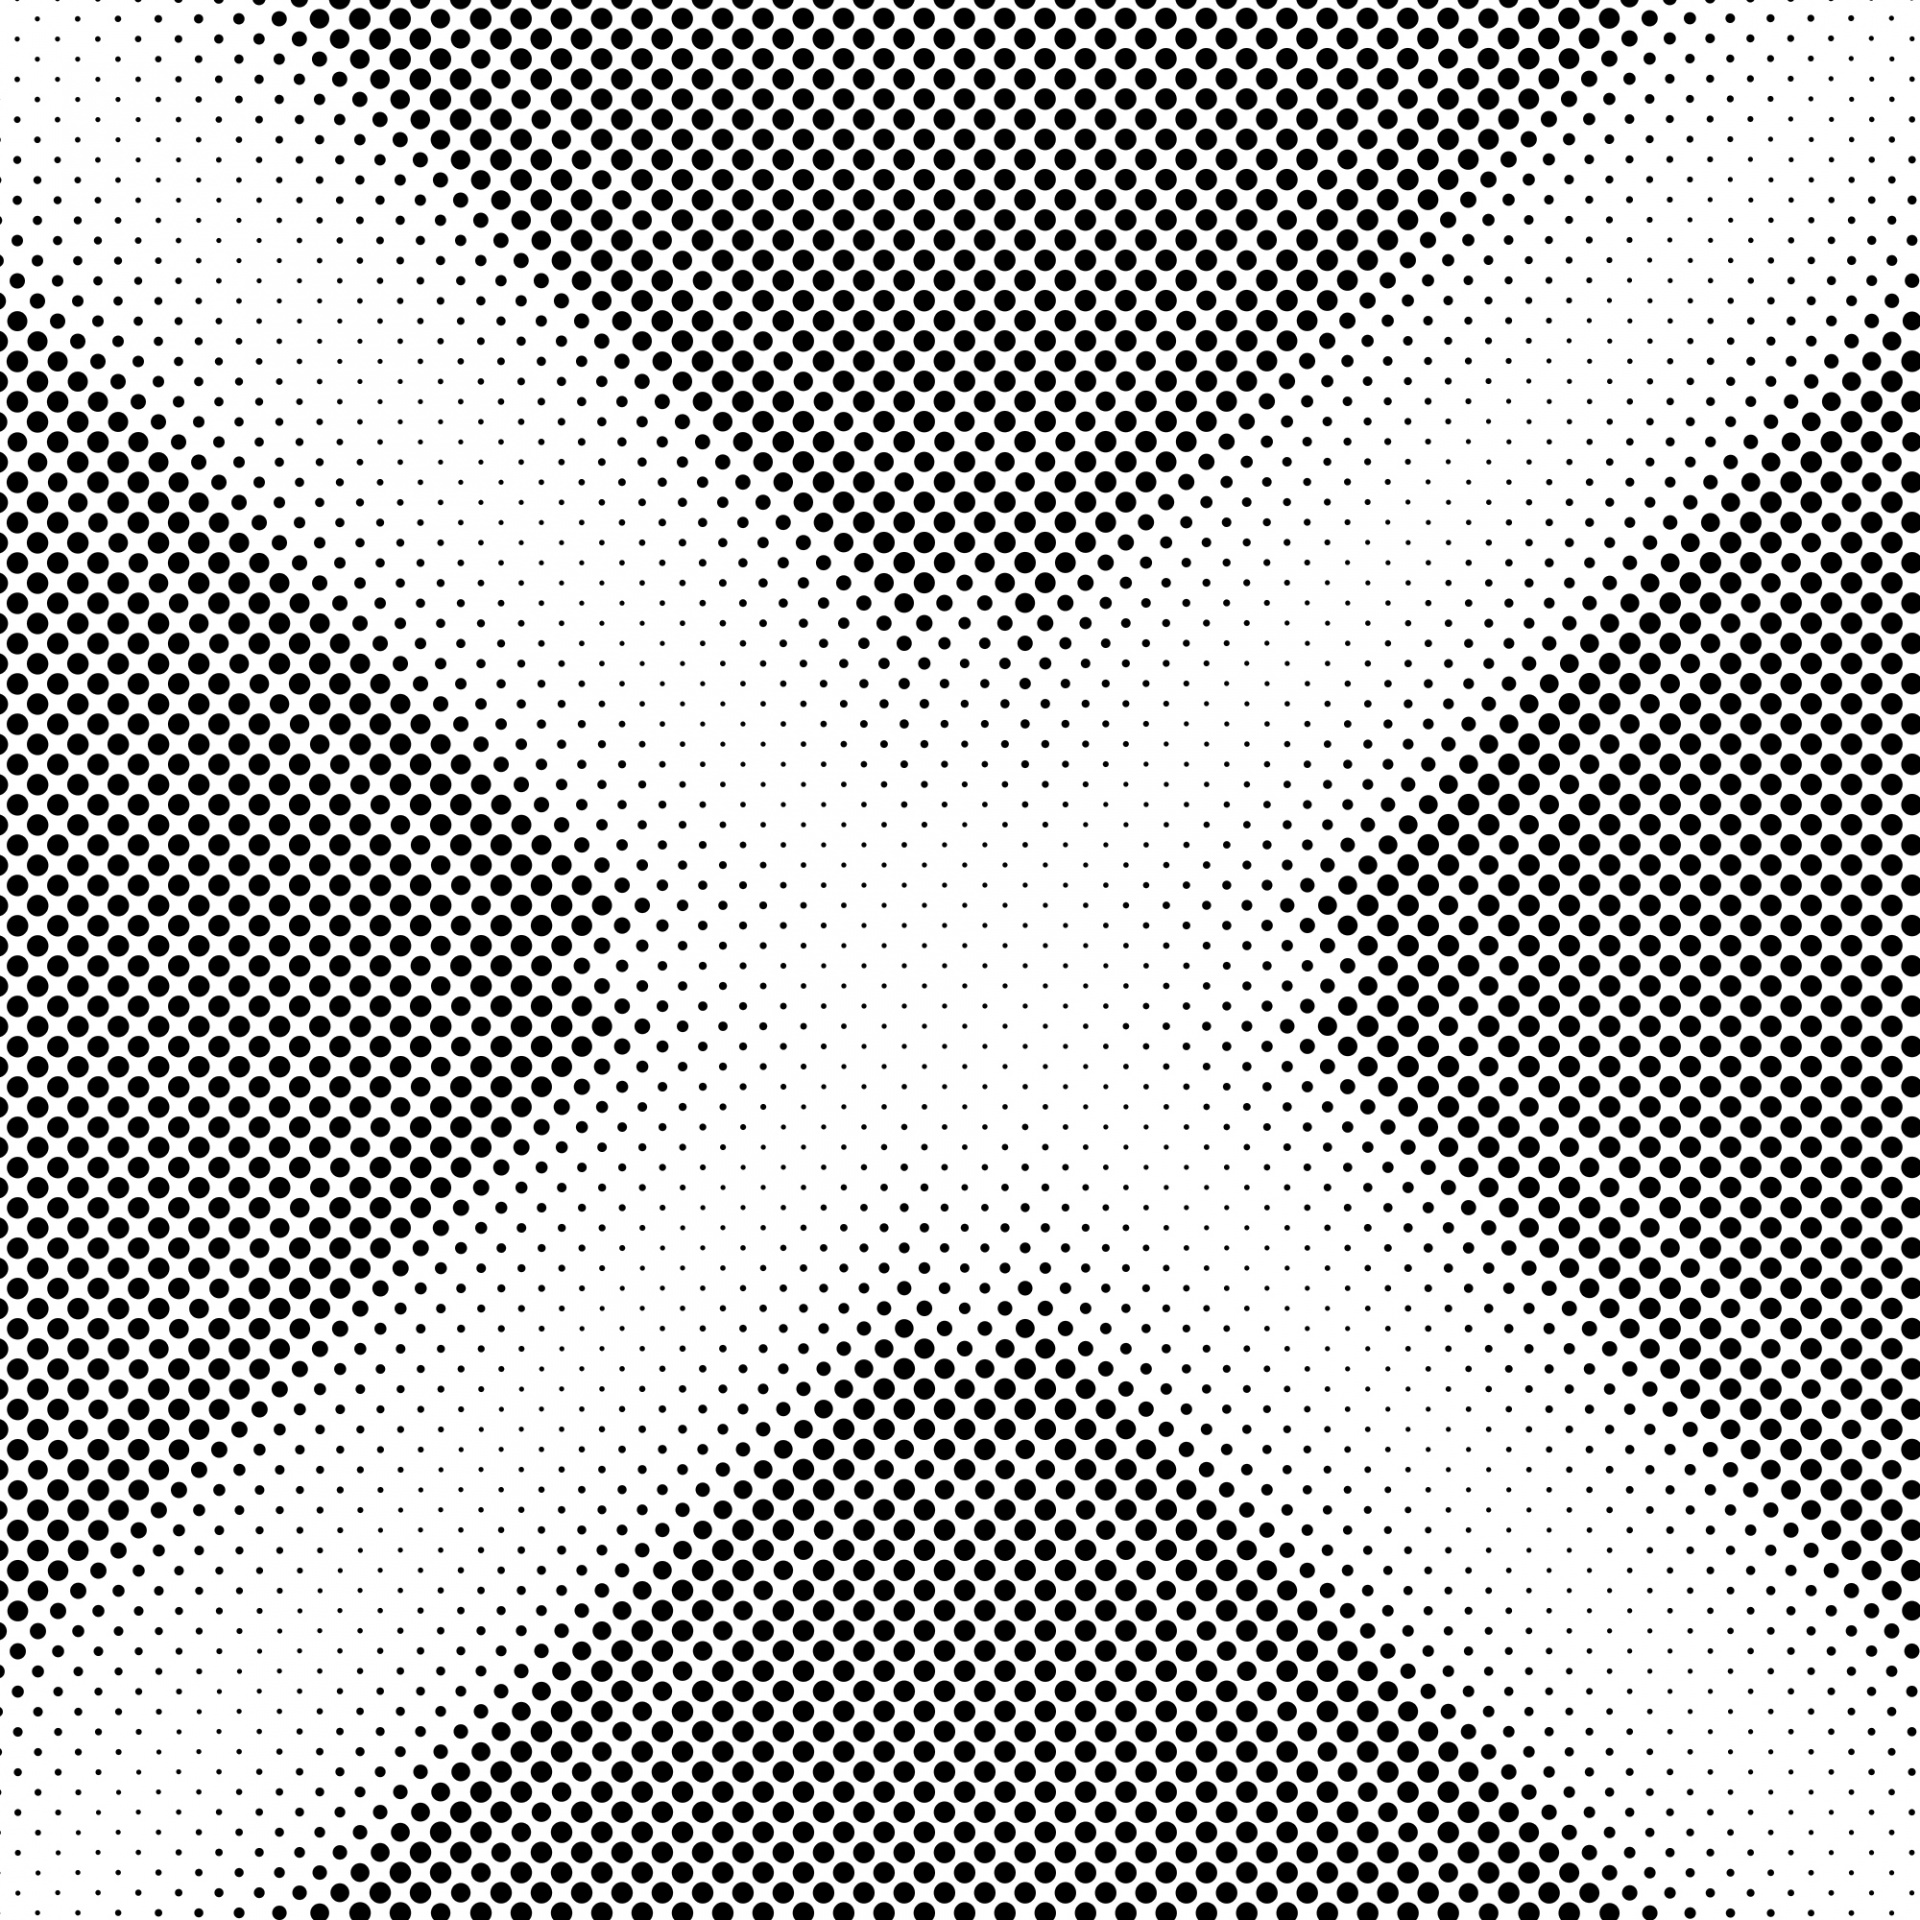 halftone pattern dots free photo